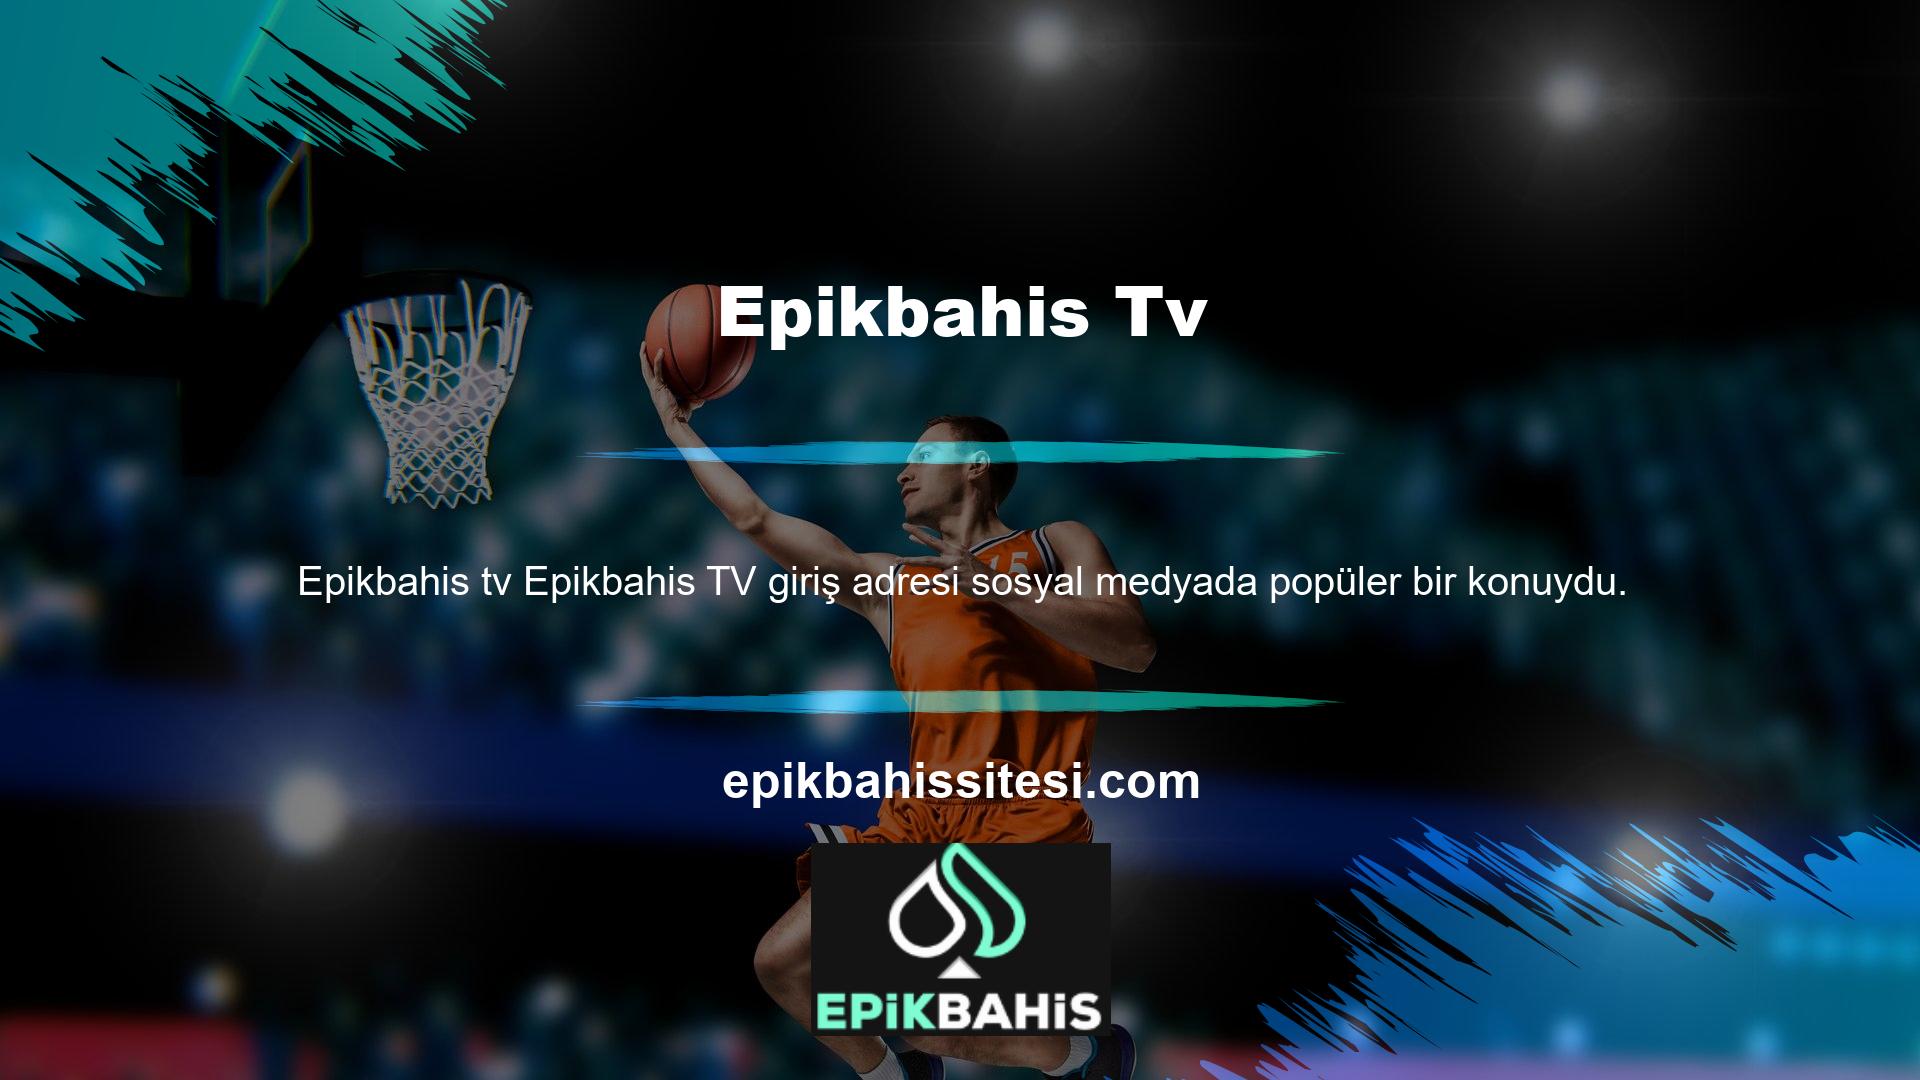 Epikbahis TV'nin giriş adresine, özellikle önemli spor etkinlikleri sırasında sosyal medya platformlarından kolayca erişilebilir